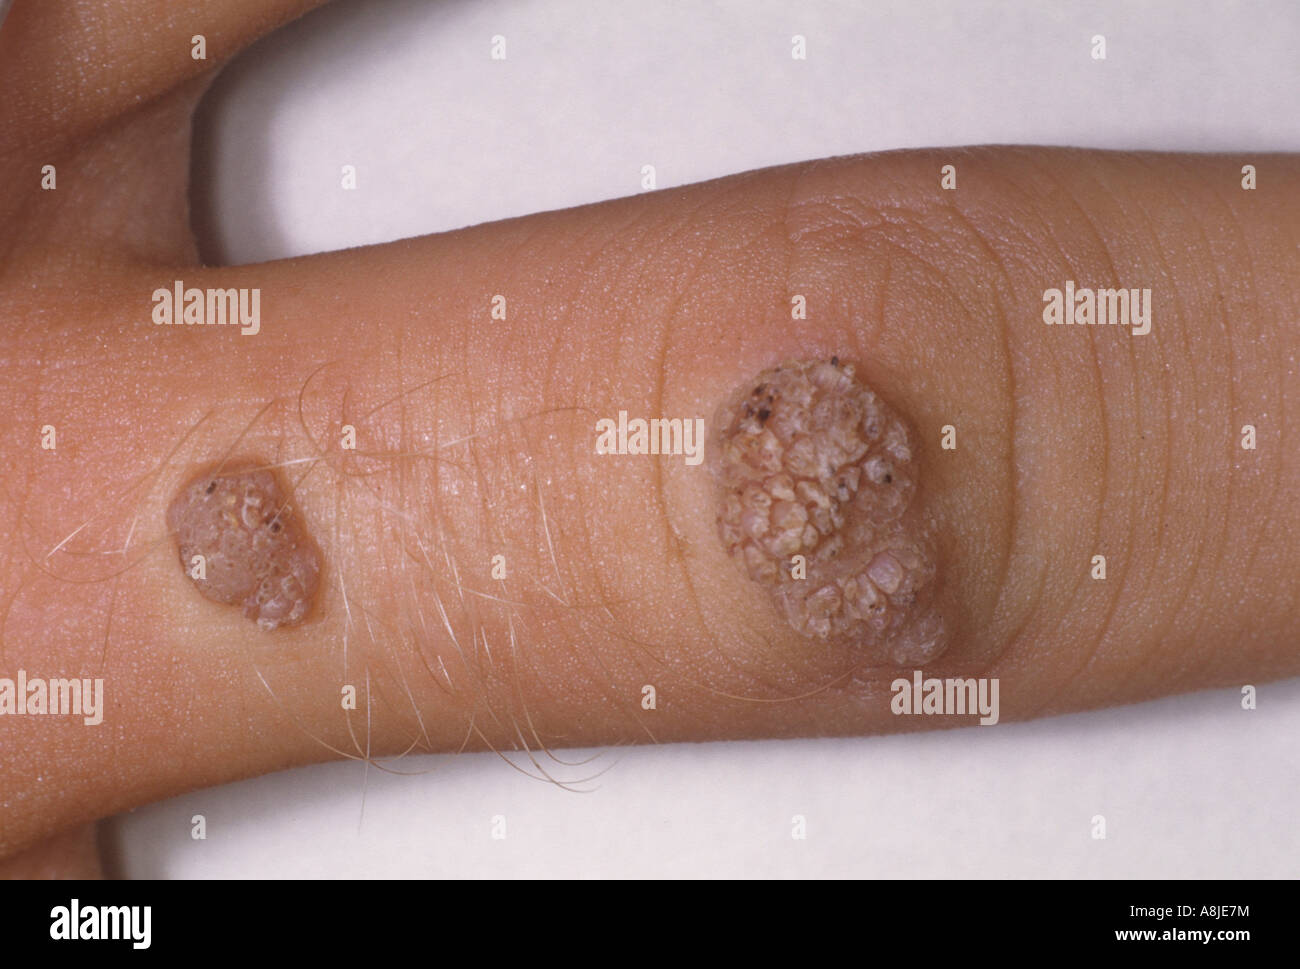 Les verrues communes sont causées par le HPV, Virus du papillome ...